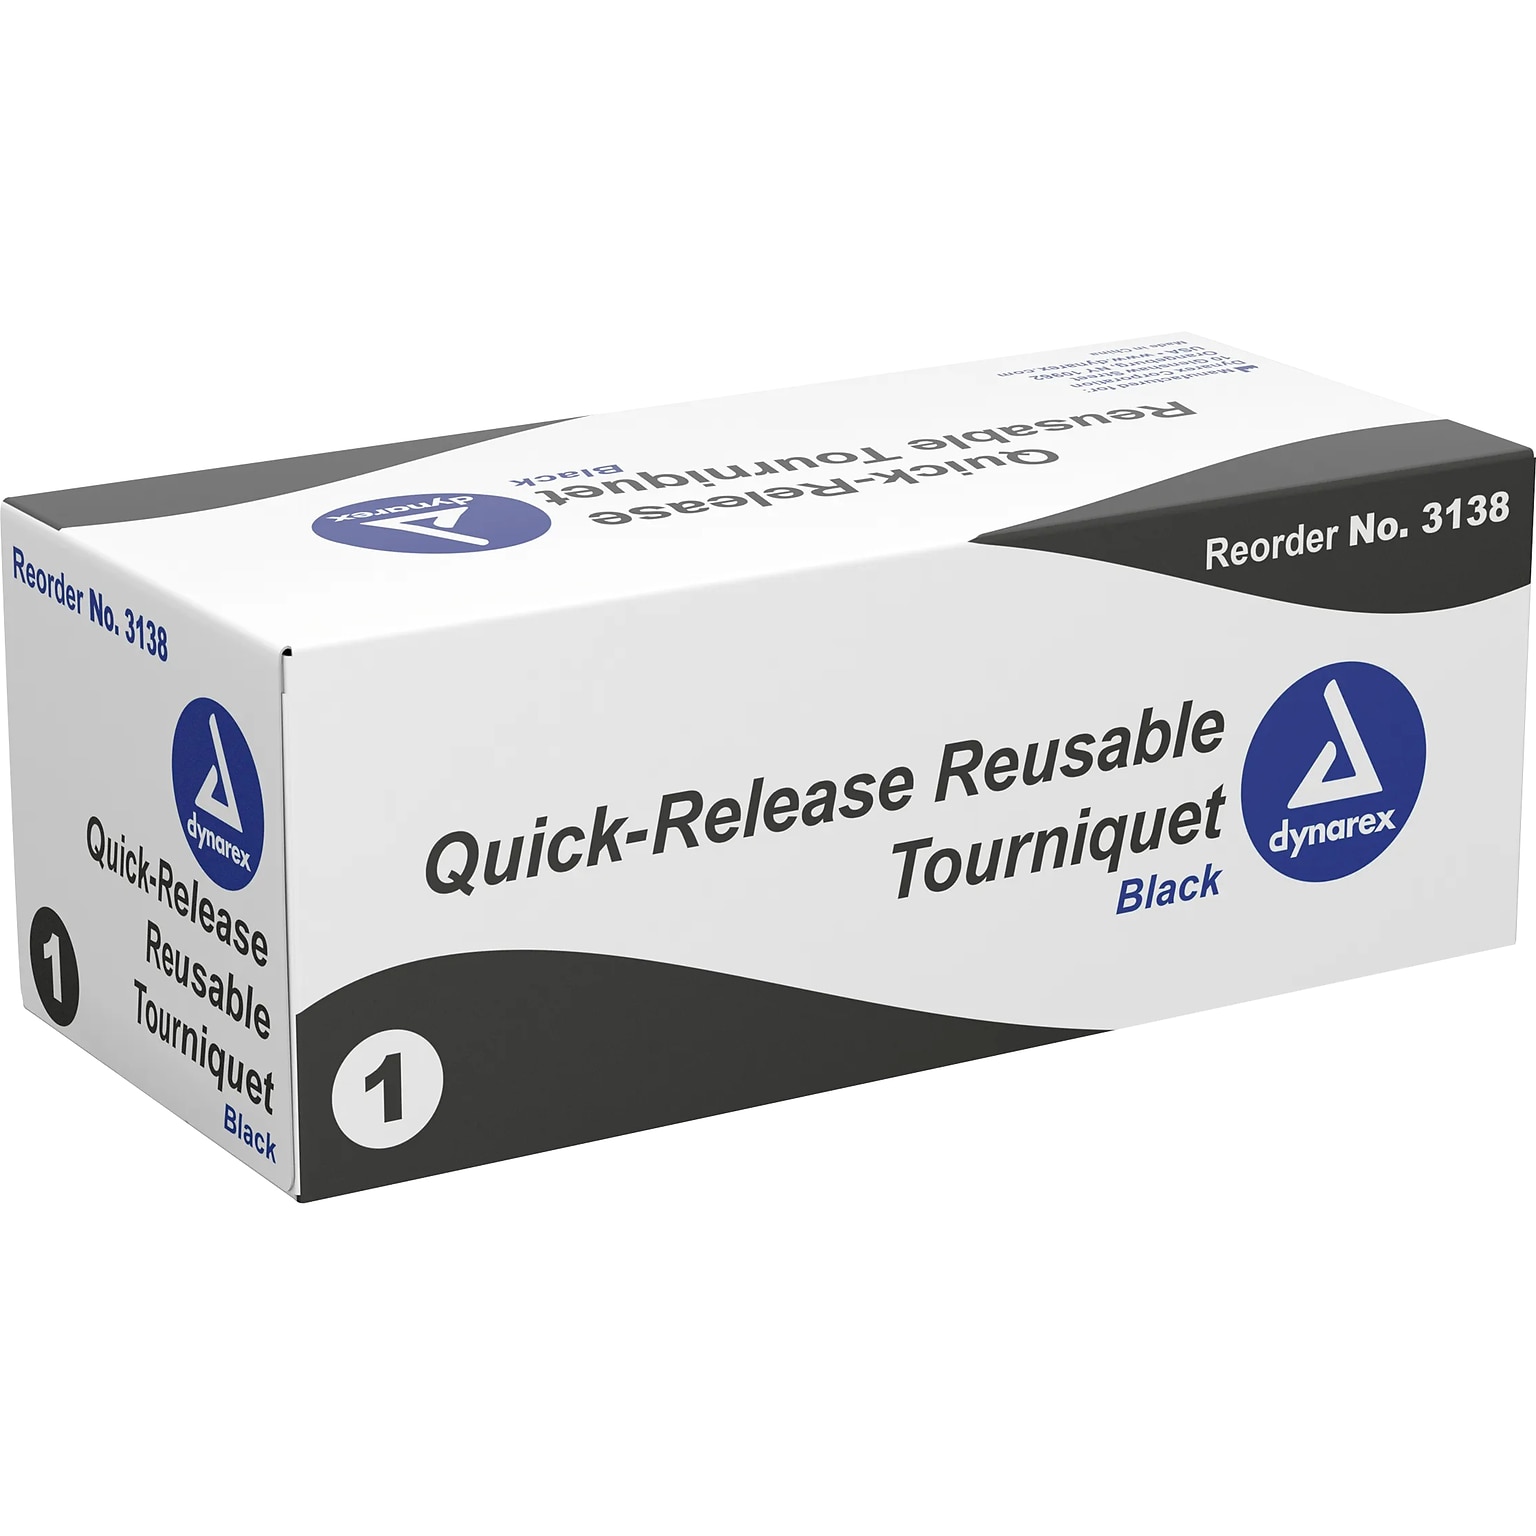 Dynarex Quick-Release Reusable Tourniquet, Black, 10/Carton (3138)